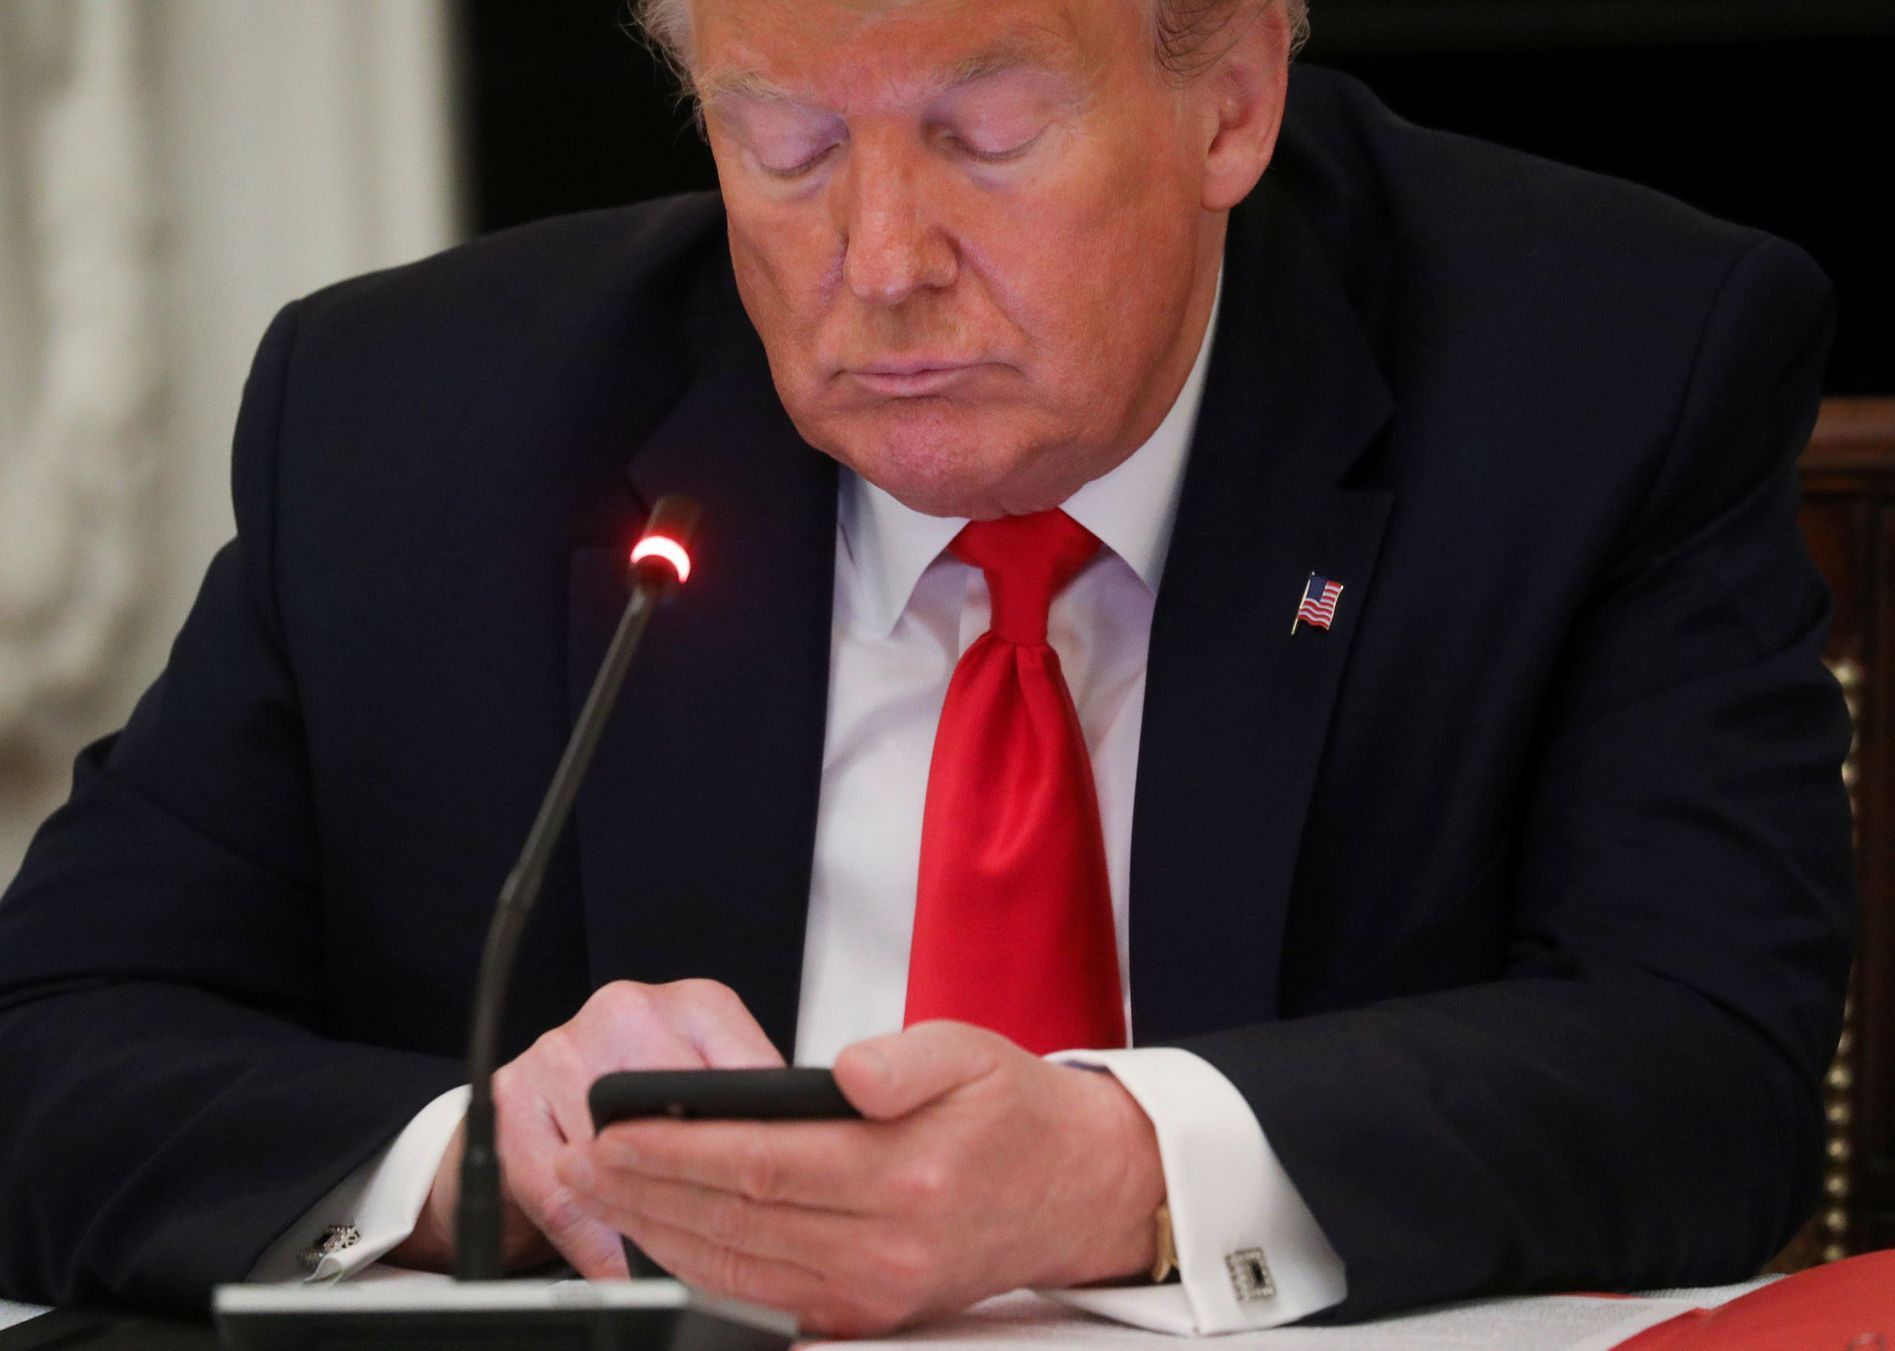 Trump, Donald, mobil, Twitter, heslo, telefon, sociální sítě, USA